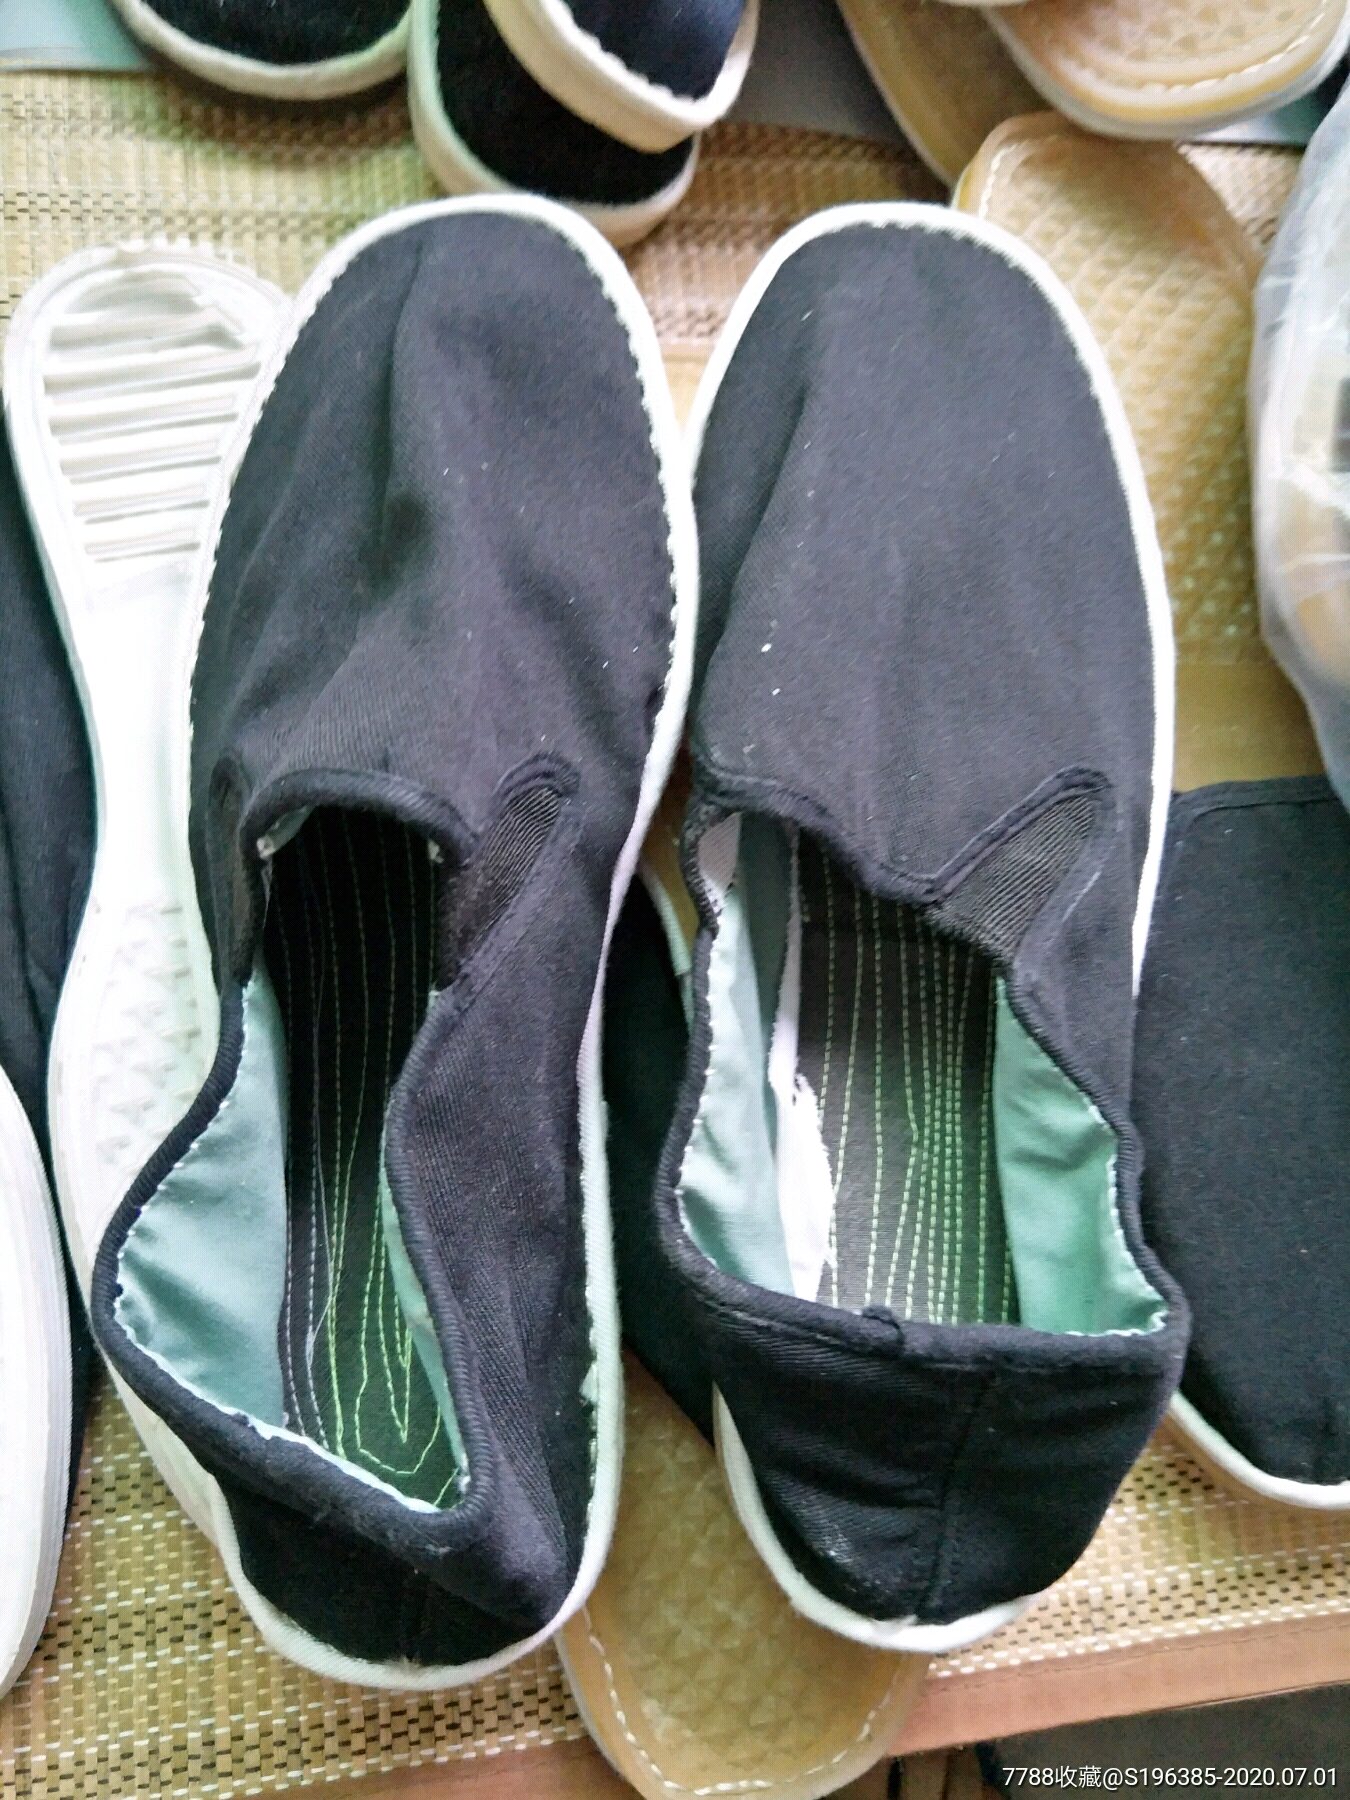 塑料底底布鞋